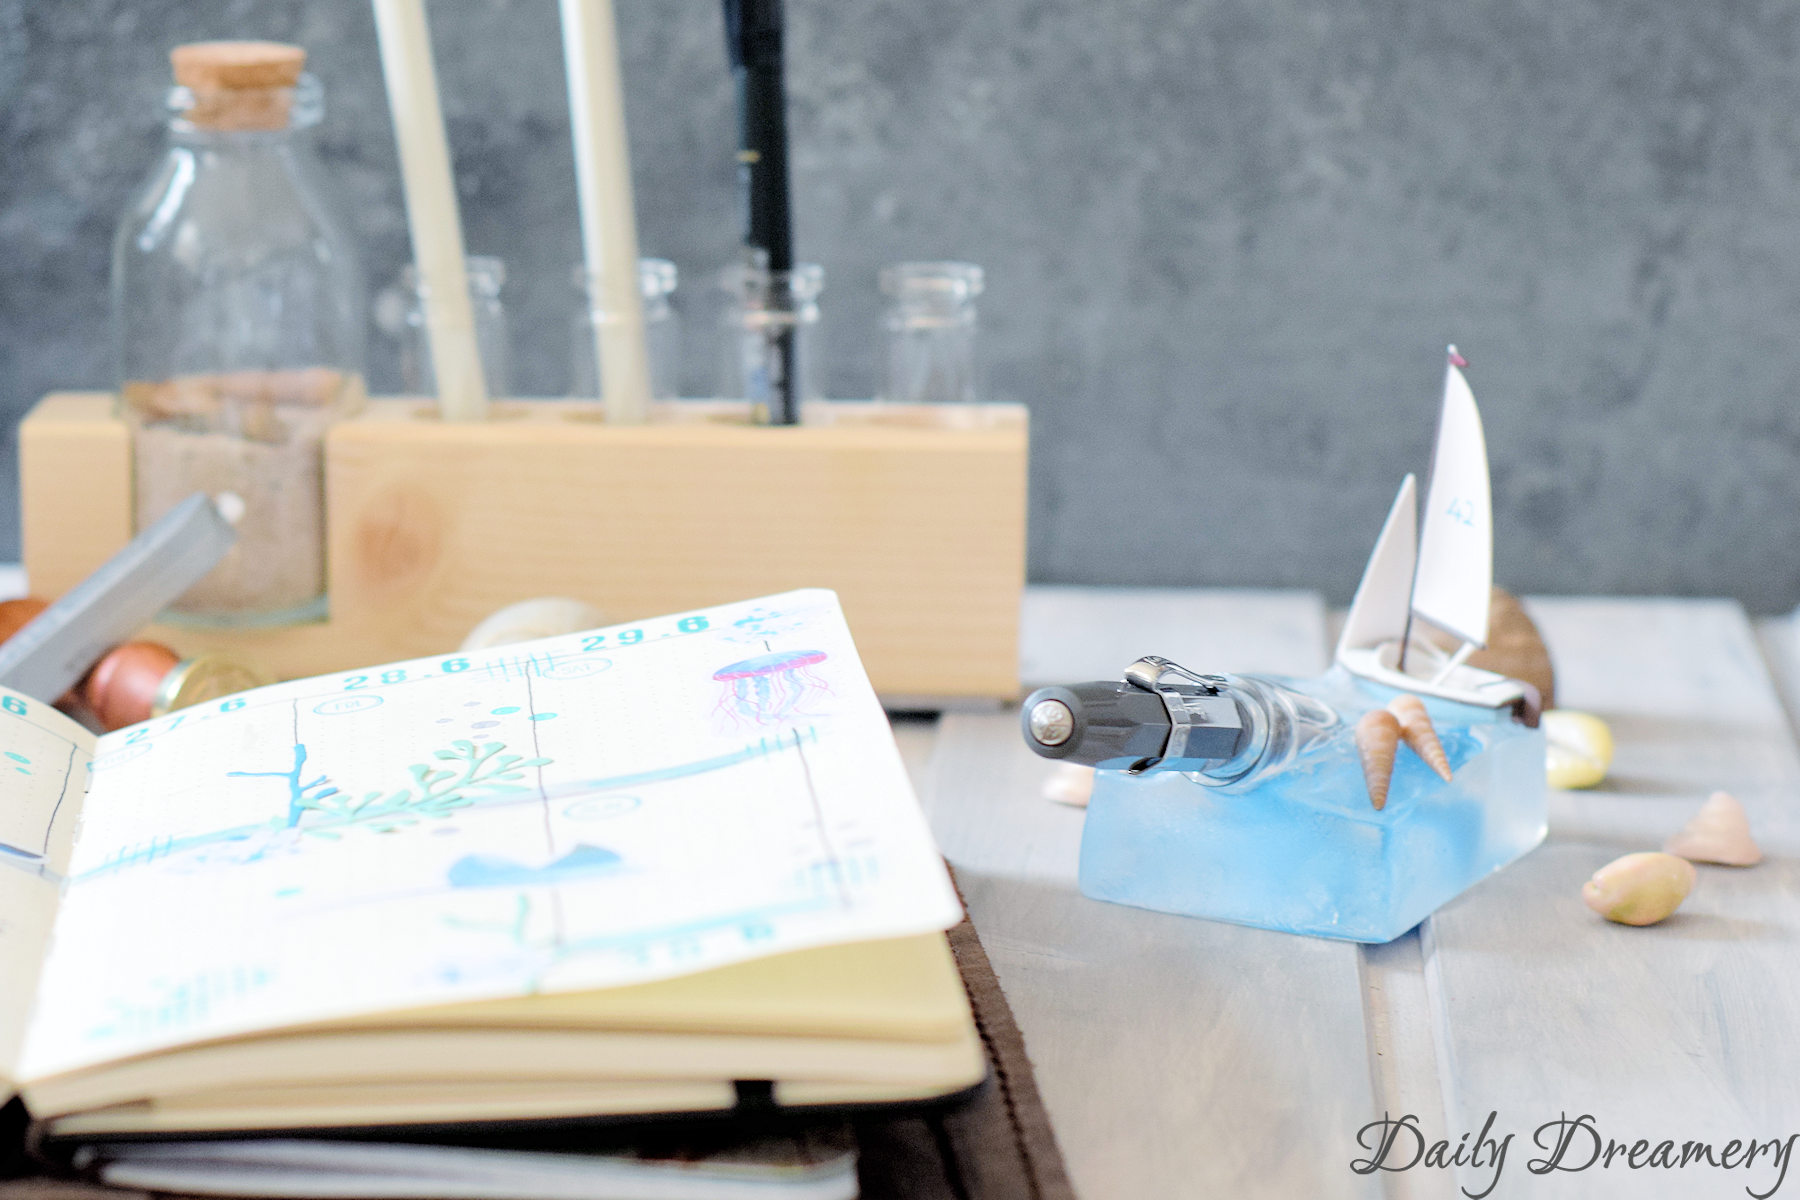 maritimer Stiftehalter, perfekt für Urlaubserinnerungen im Reisetagebuch oder als Schmuckstück auf dem Schreibtisch #diy #penholder #stiftehalter